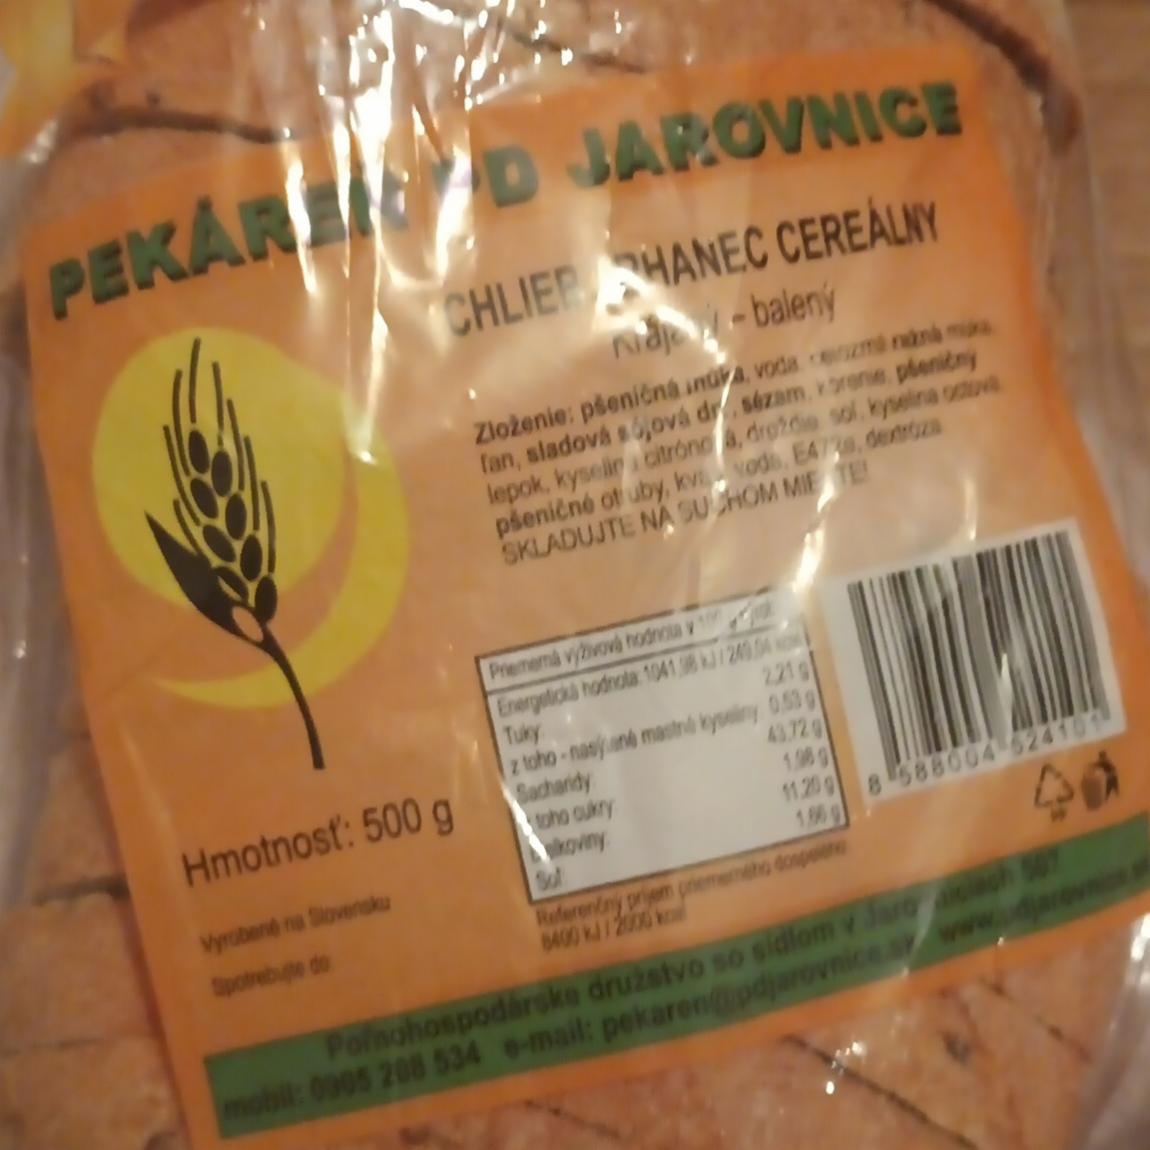 Fotografie - Chlieb trhanec cereálny Pekáreň PD Jarovnice